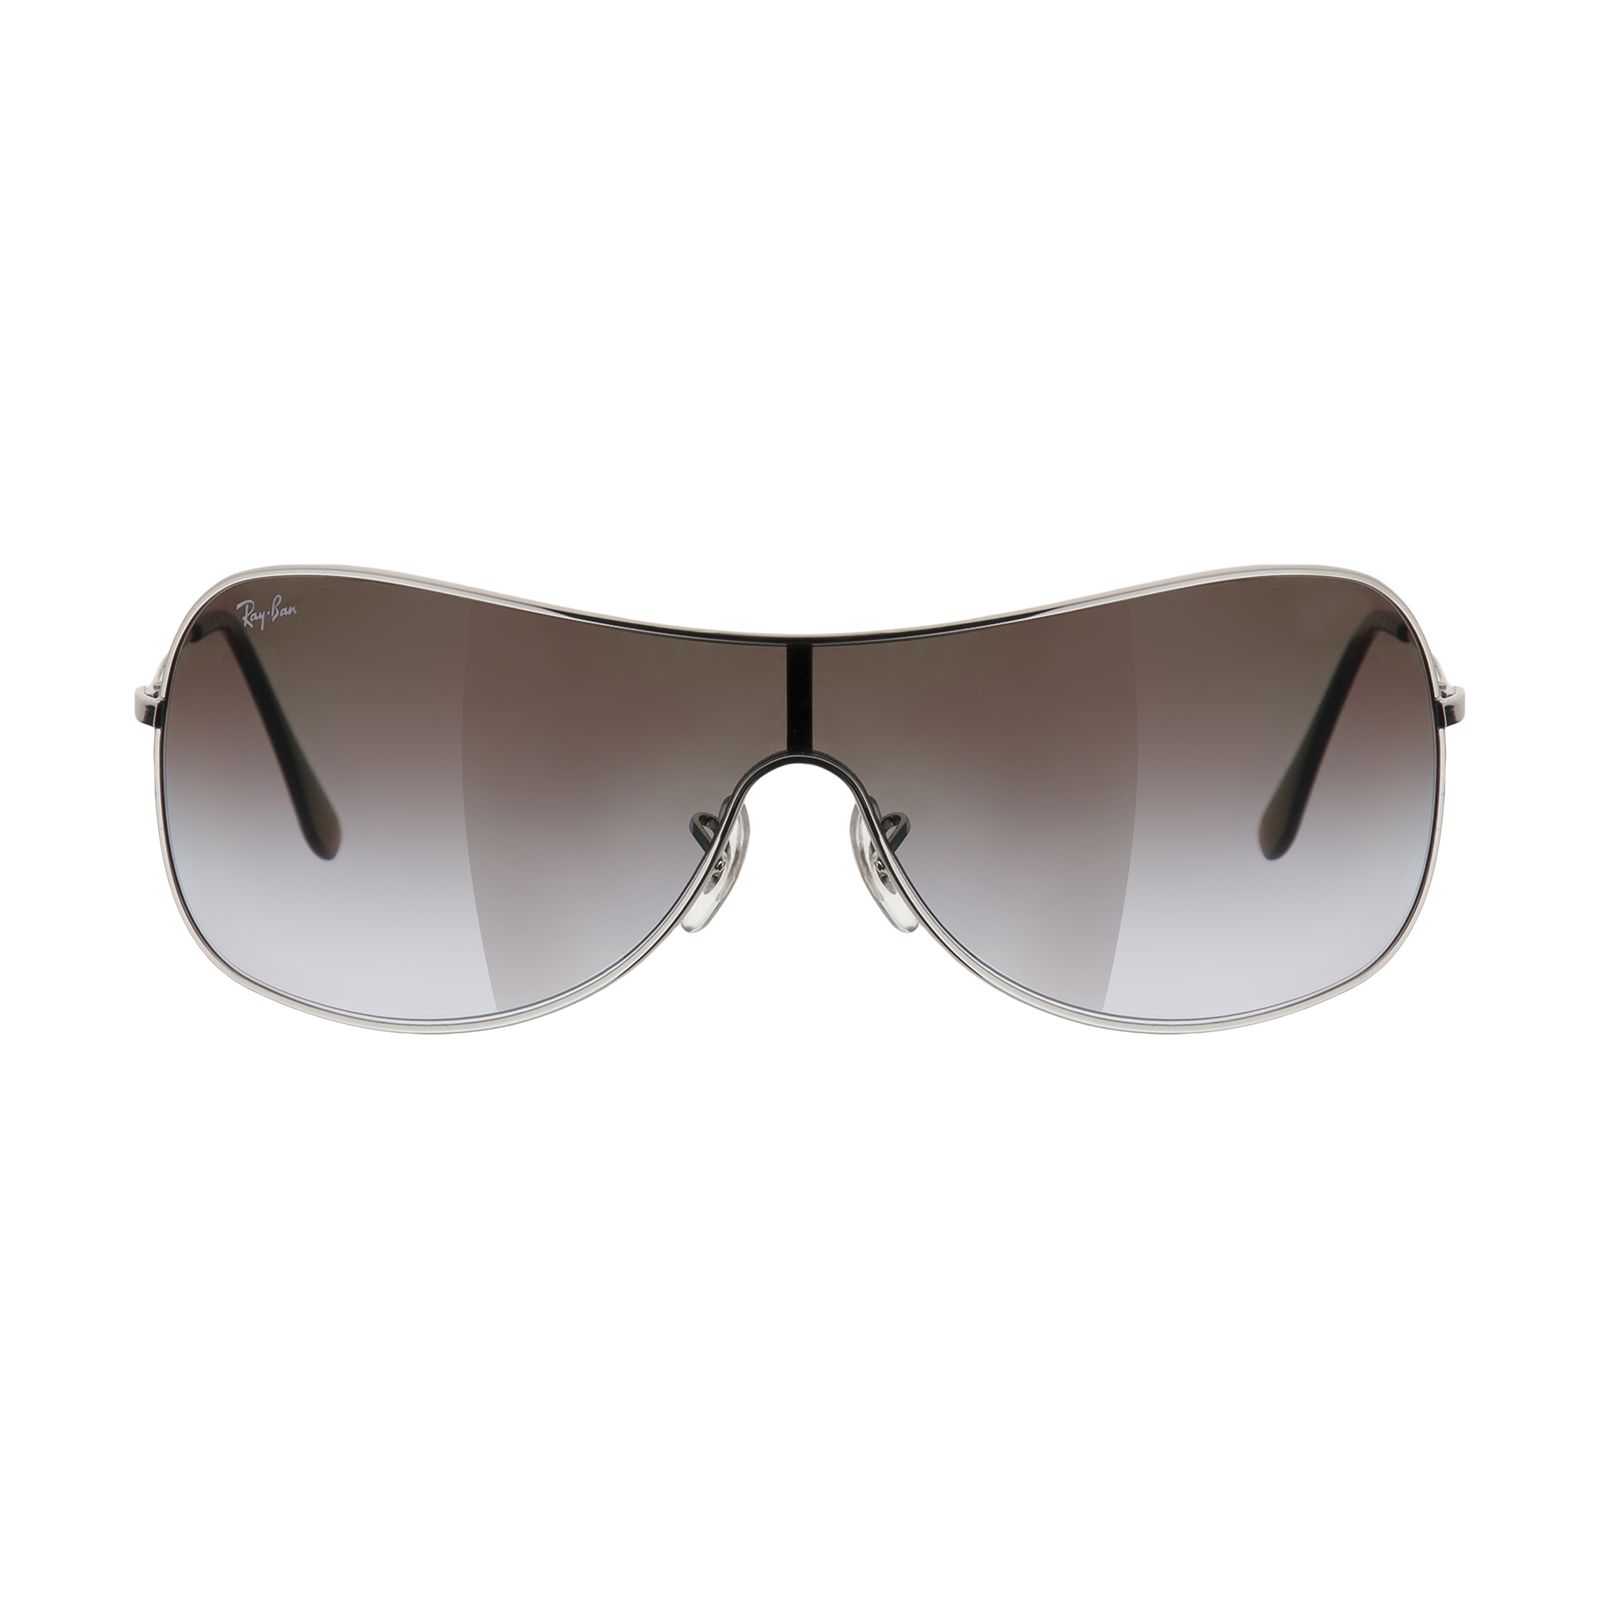 عینک آفتابی ری بن مدل 3211-003/68-38 -  - 1